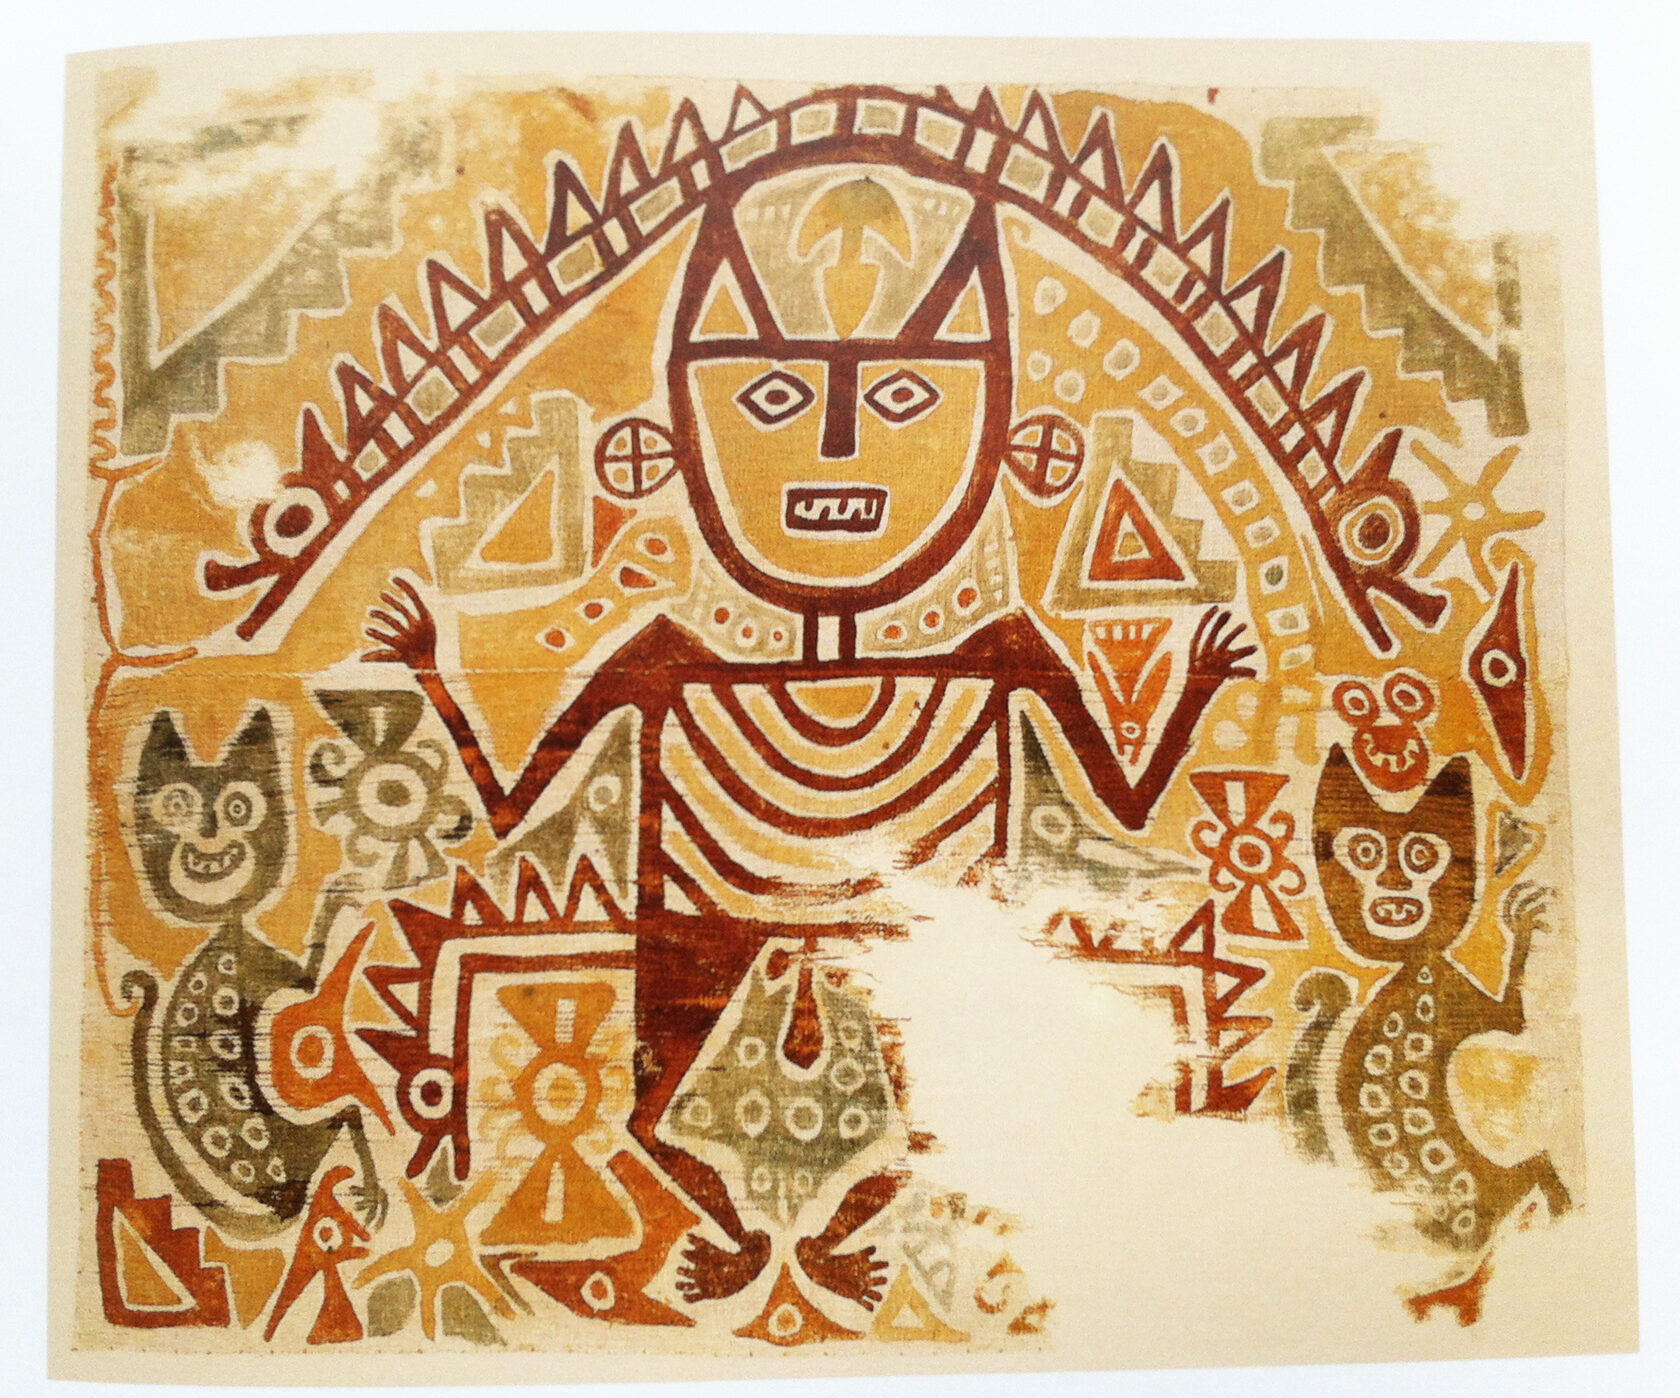 Ткань, Перу, 900-1100 гг. н.э. Коллекция Музея Пяти Континентов (ранее Этнографический музей).